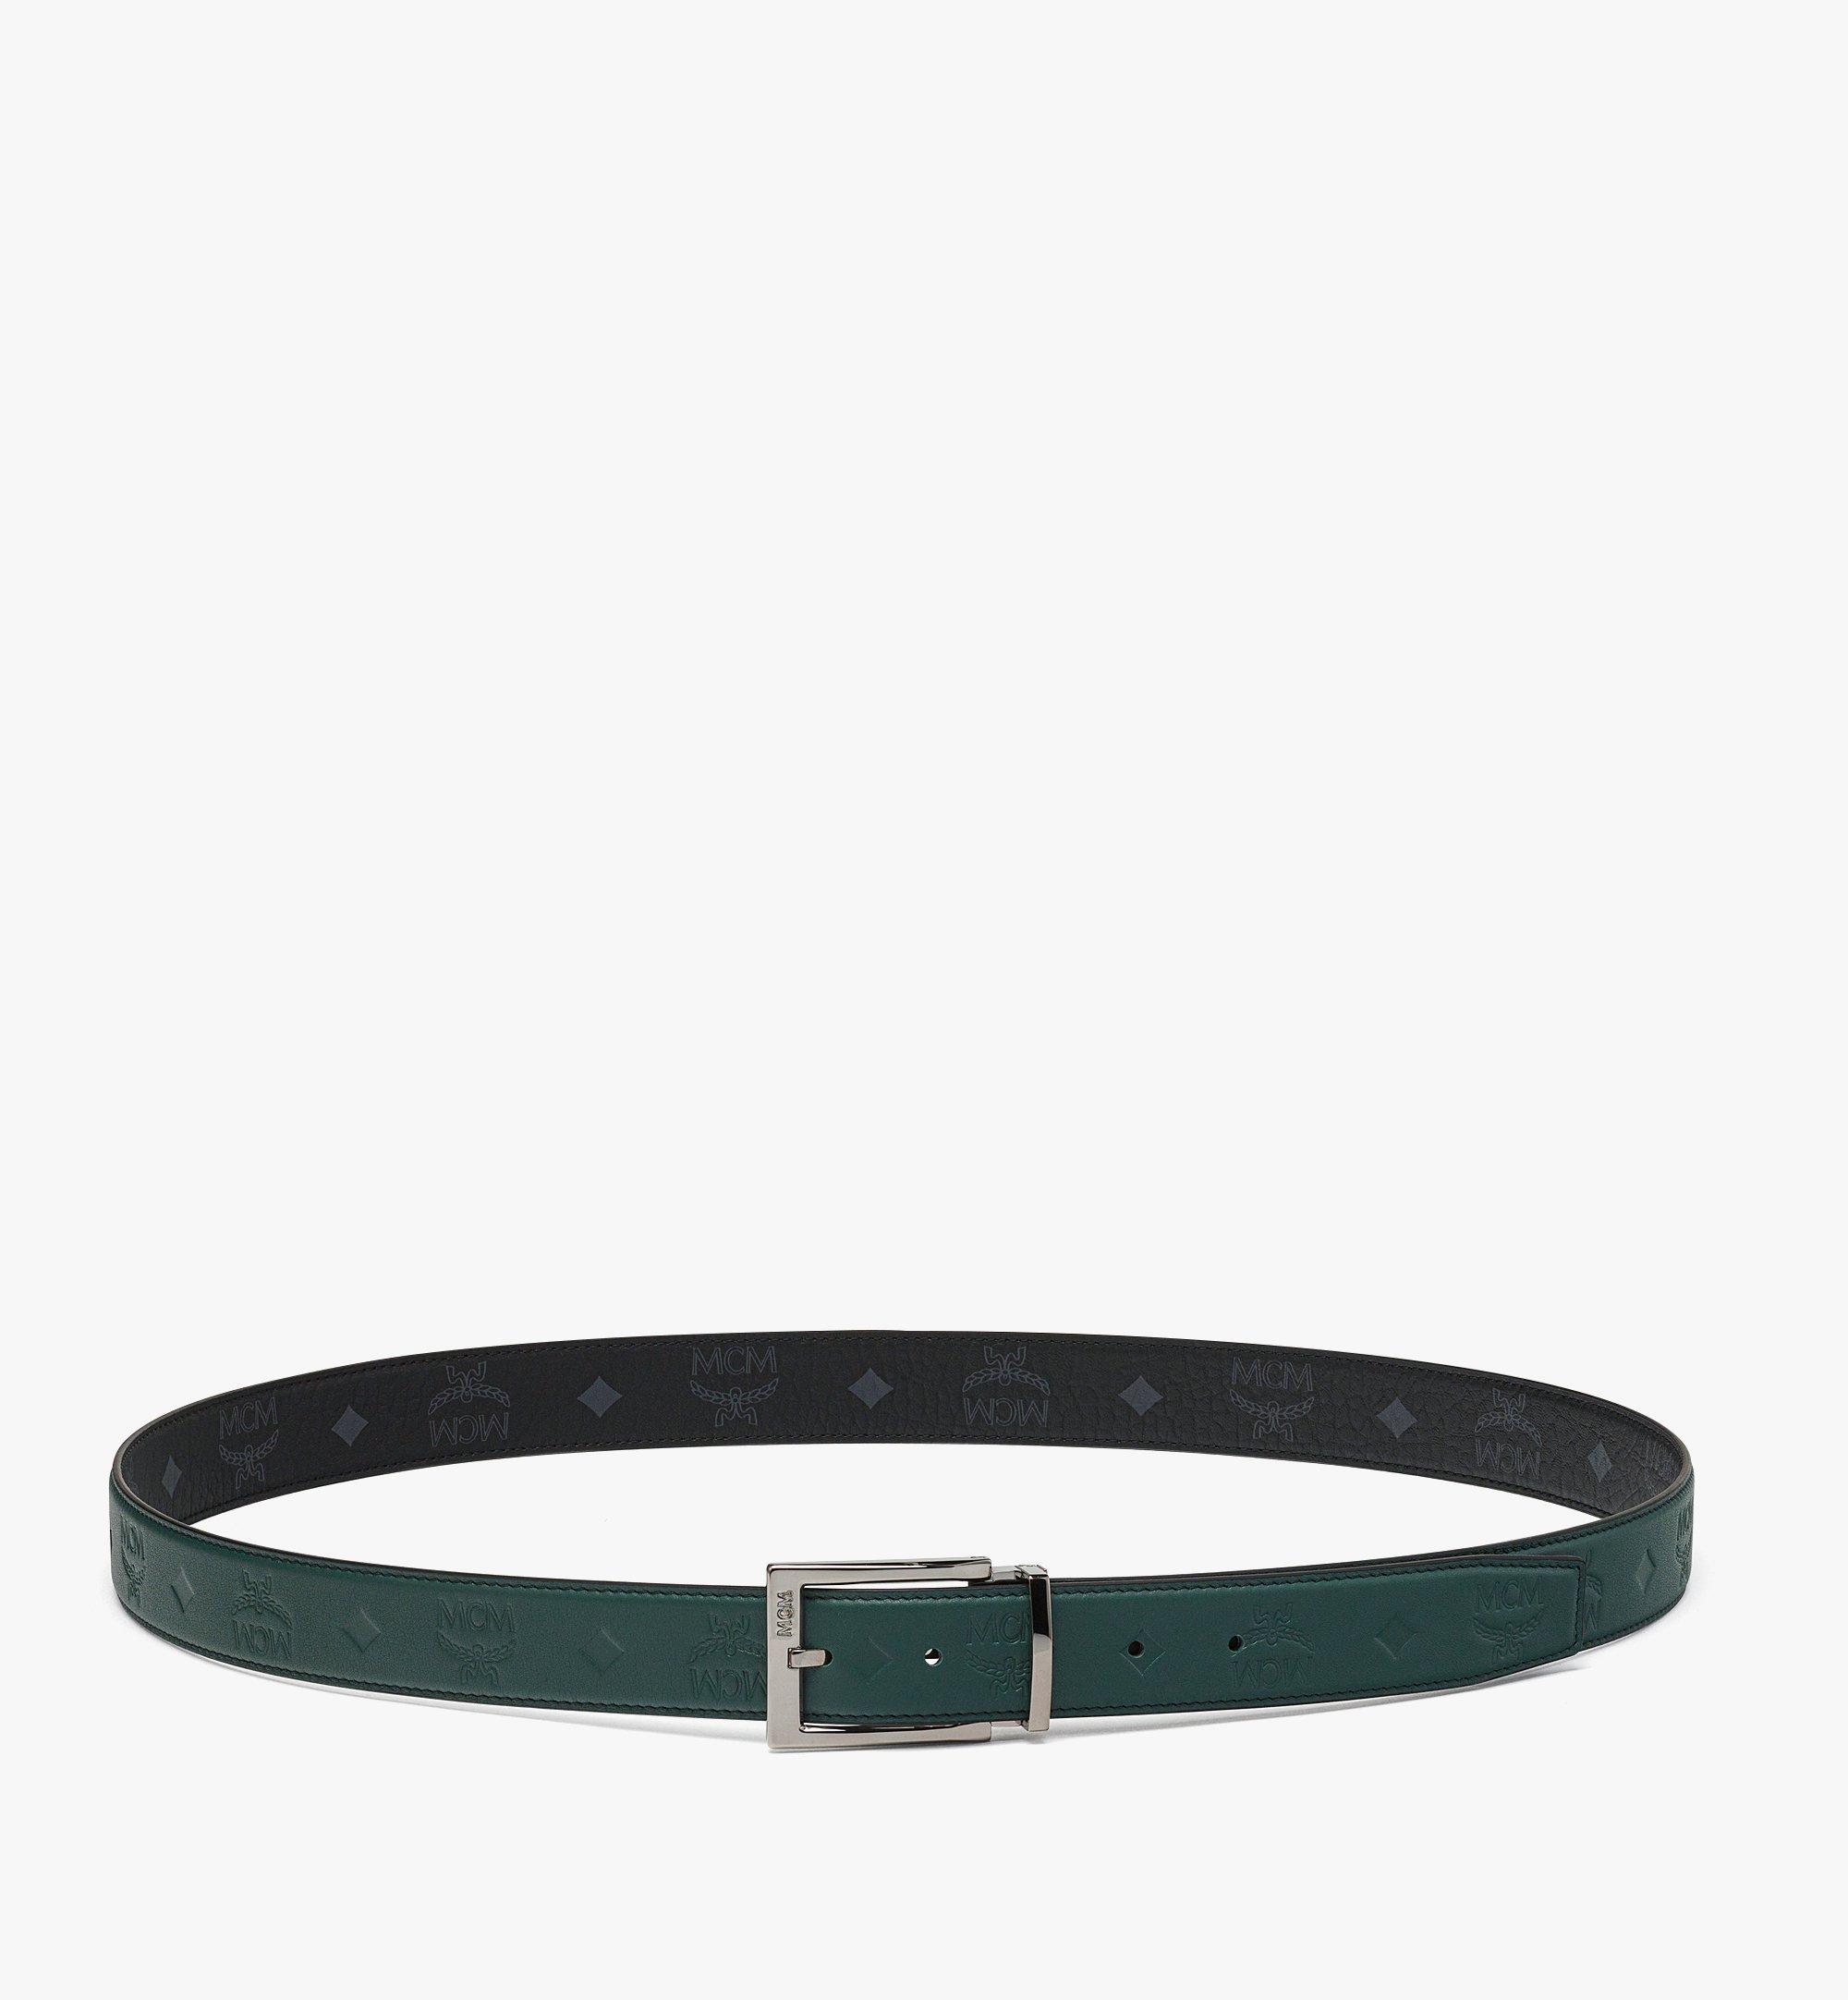 Adjustable Aren Reversible Belt 1.3” in Embossed Monogram Leather Green